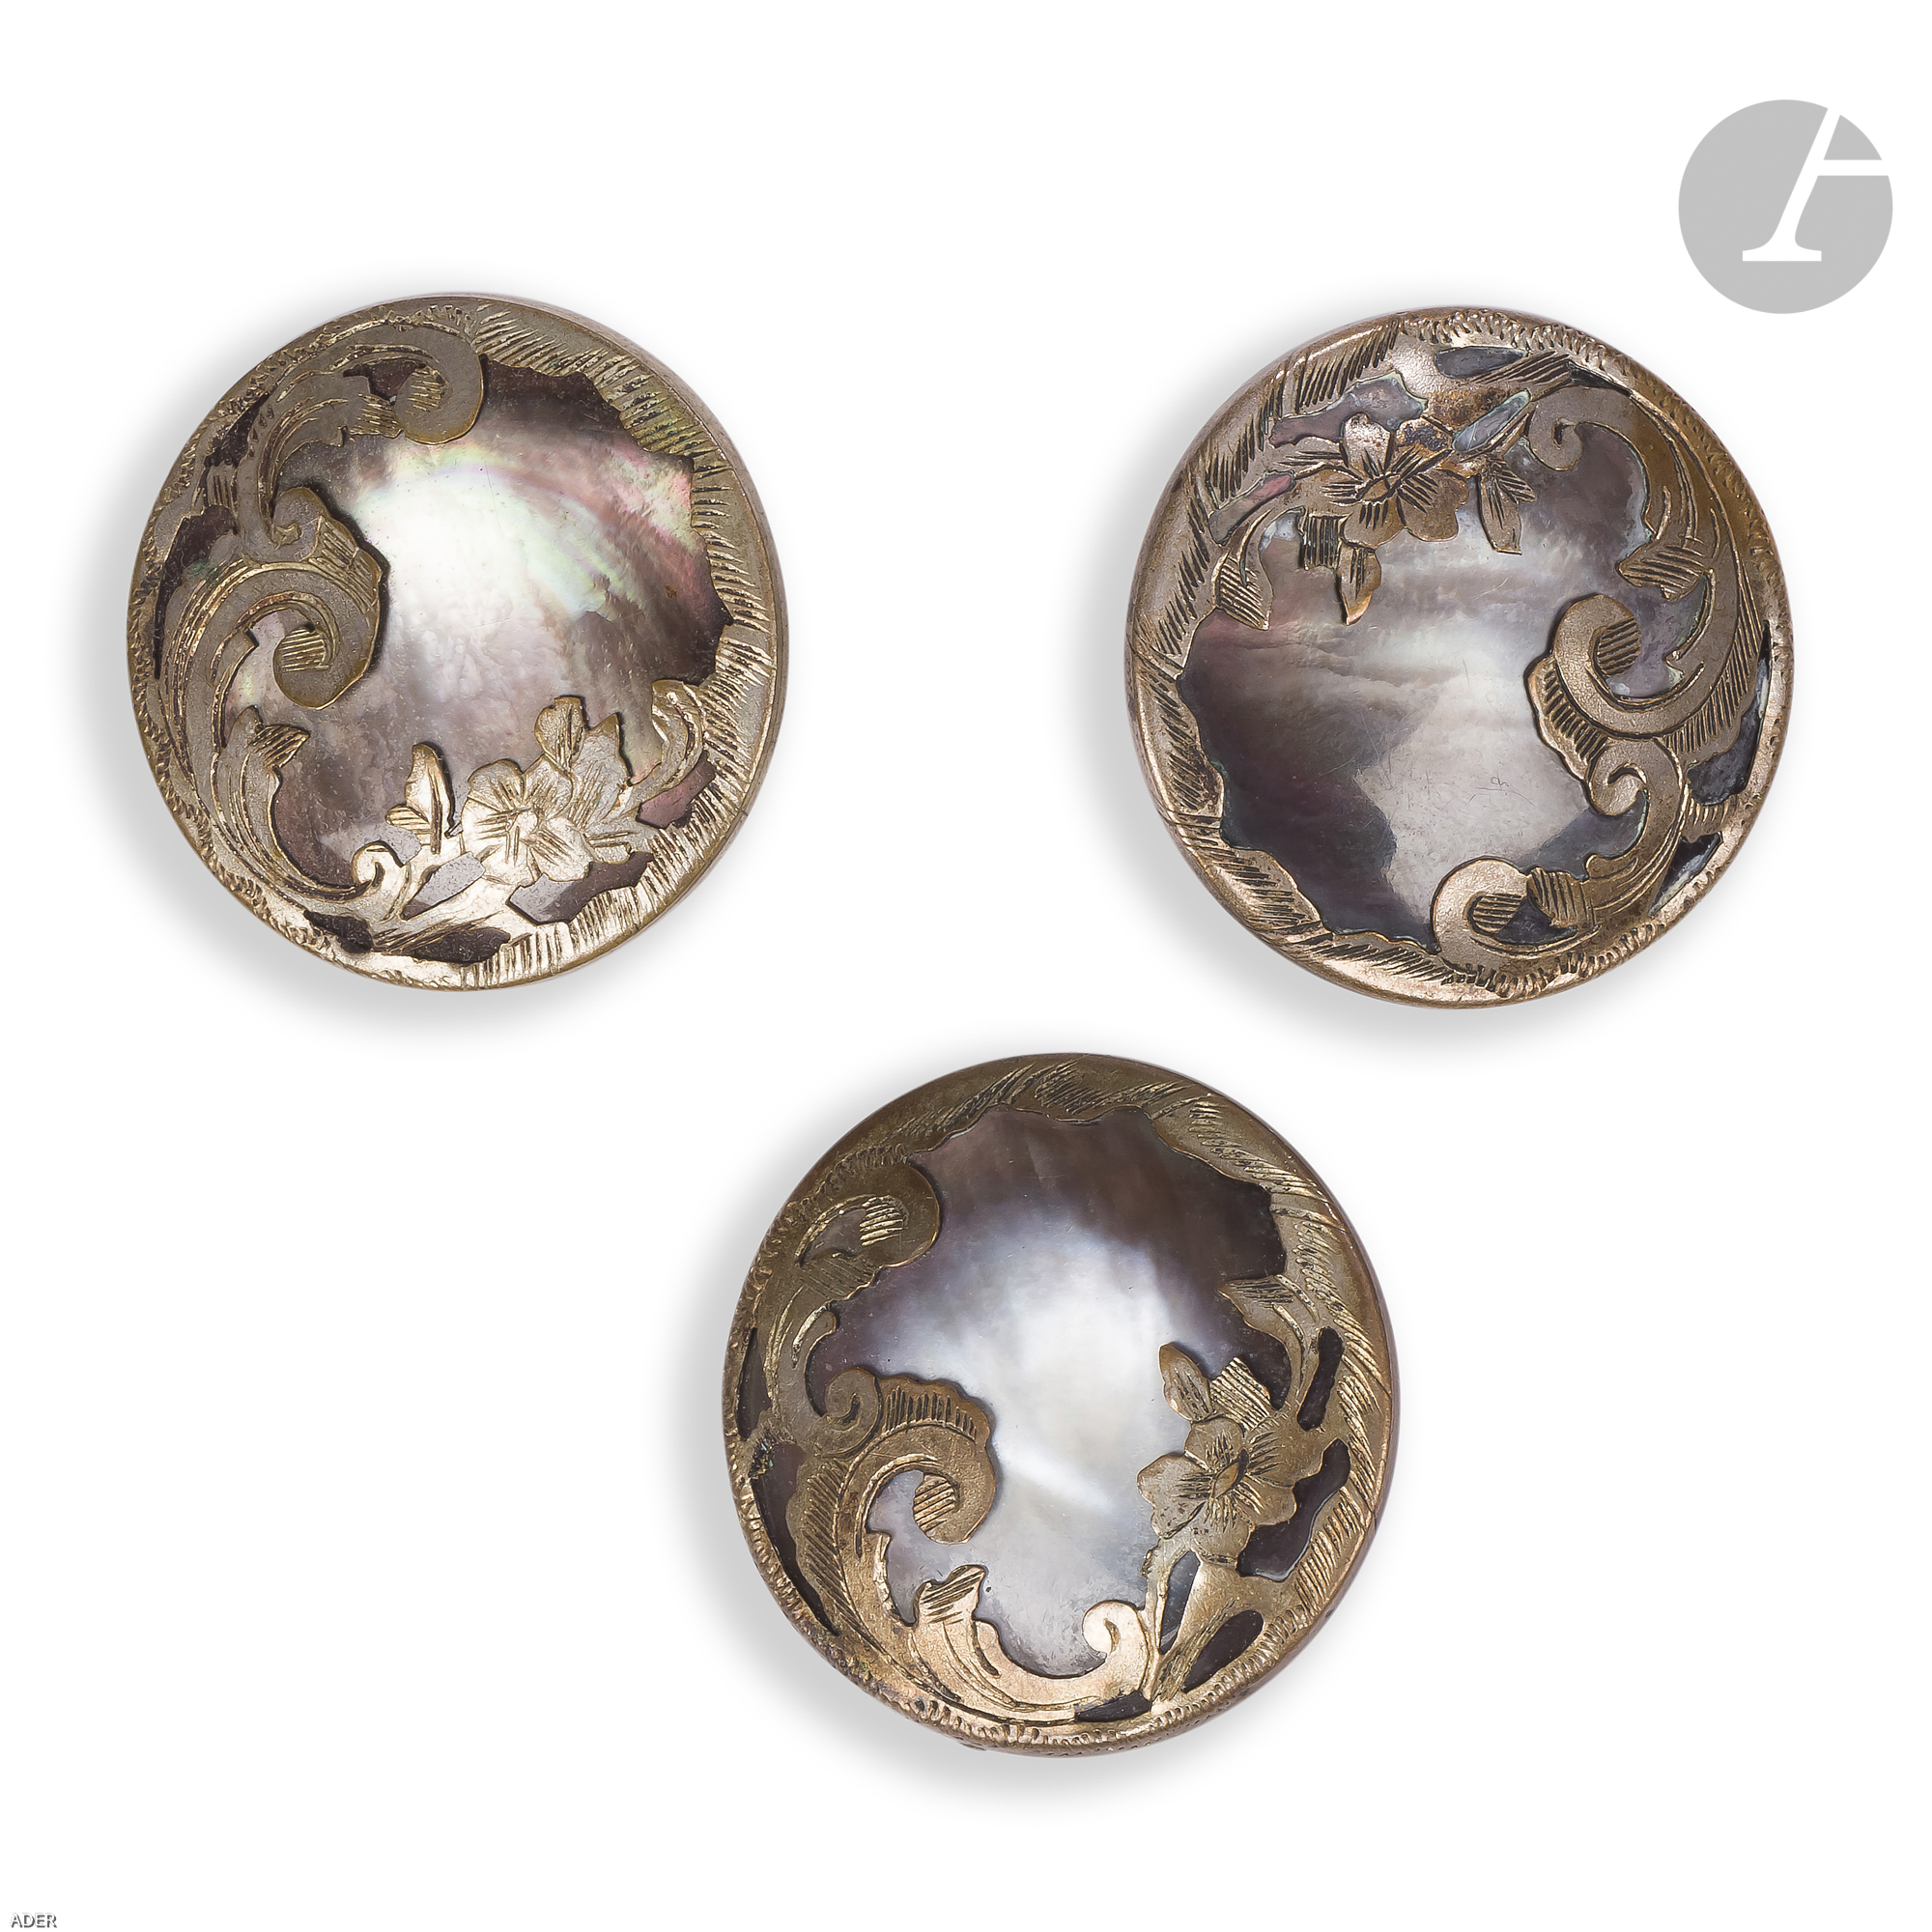 Lot de 3 boutons en nacre, cerclage orné de fleurs et feuillages en cuivre ciselé, travail de la fin du XVIIIe, début du XIXe siècle.